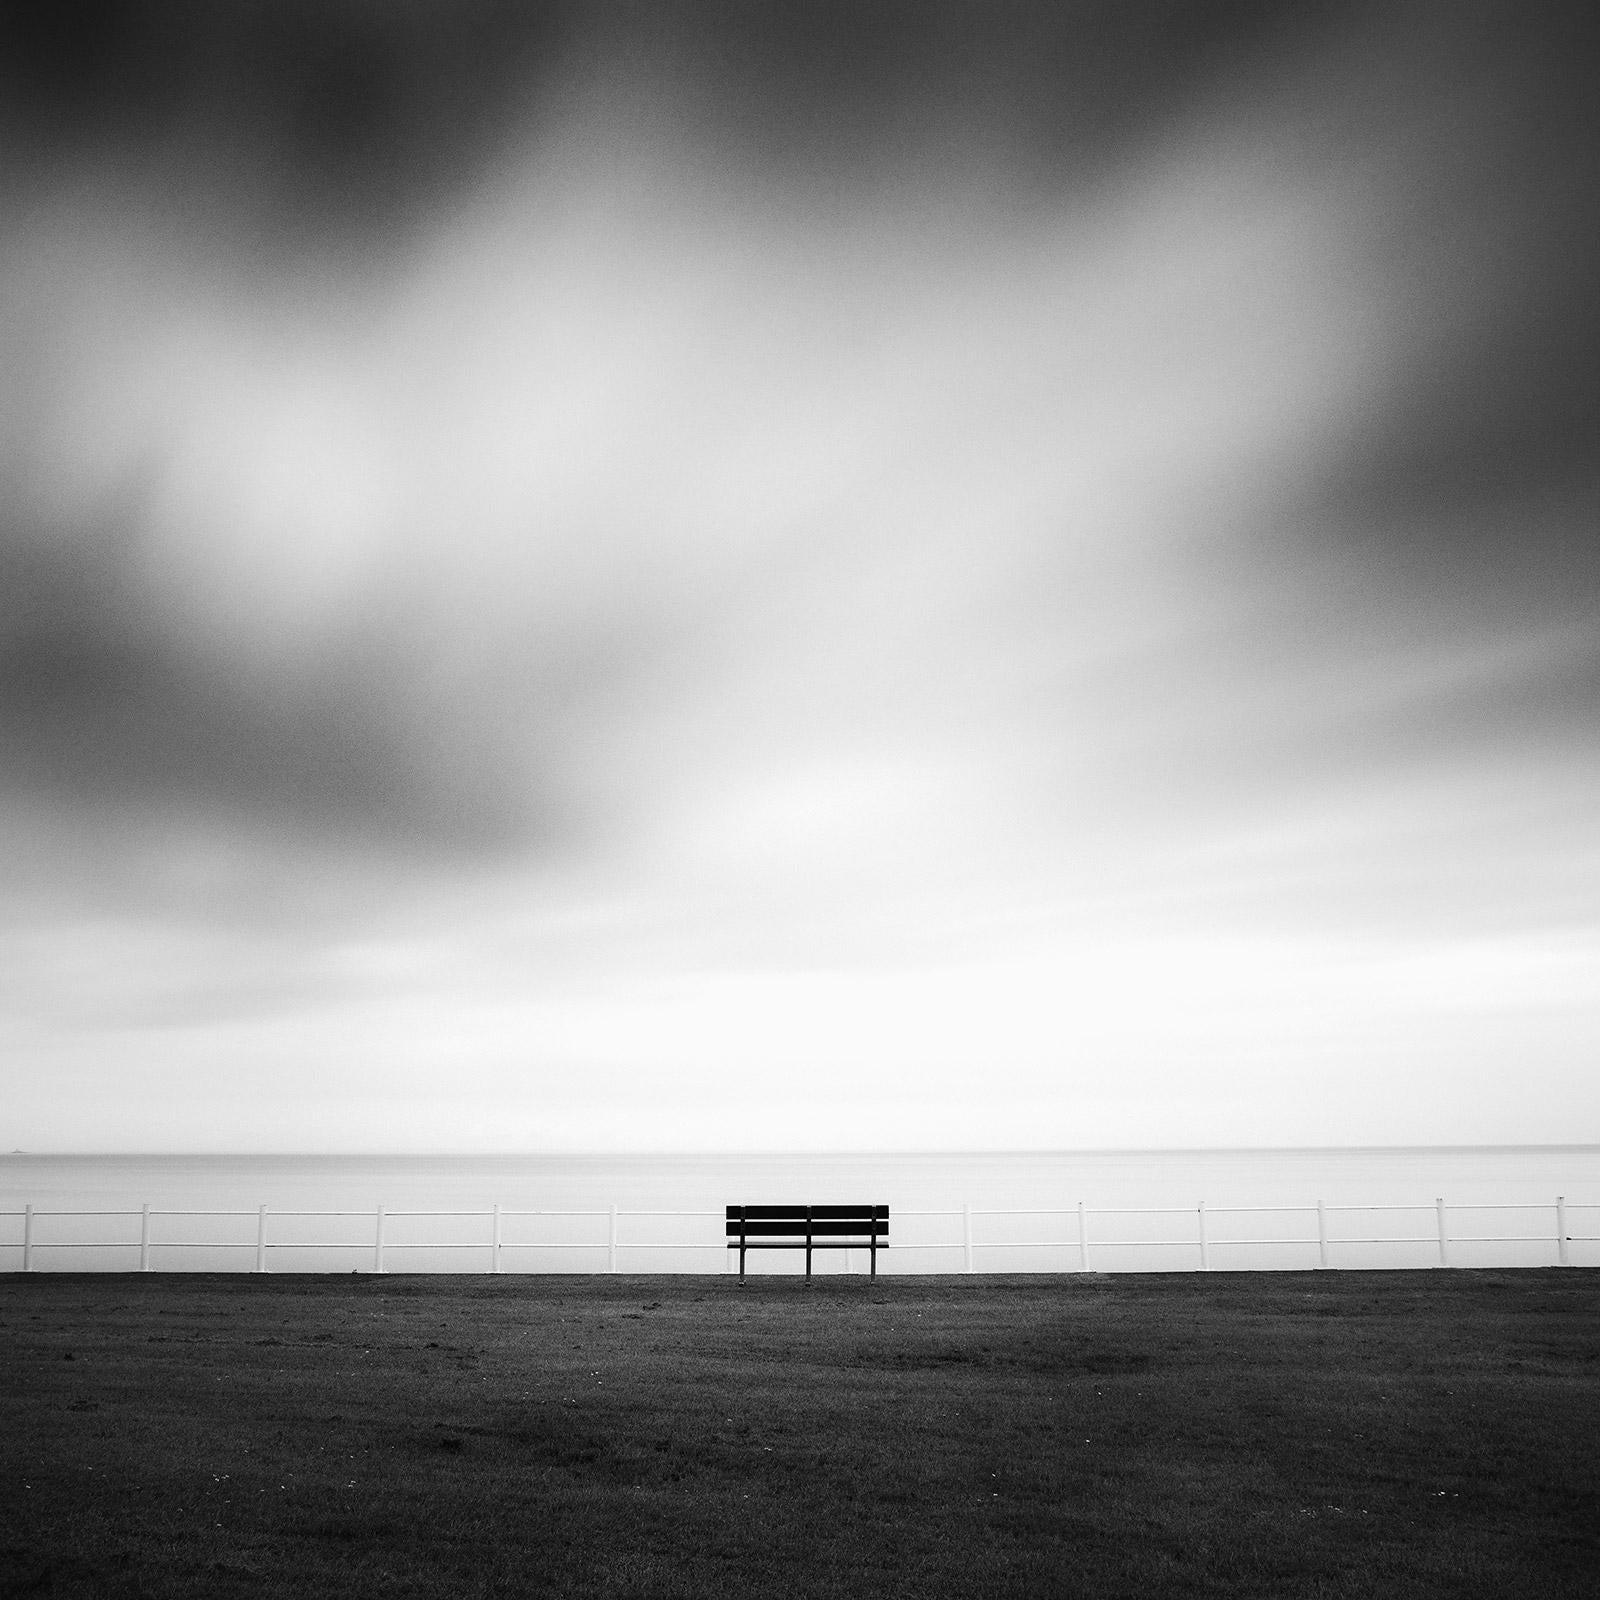 Landscape Photograph Gerald Berghammer - Matin calme dans le parc, bord de mer, Irlande photographie de paysage en noir et blanc